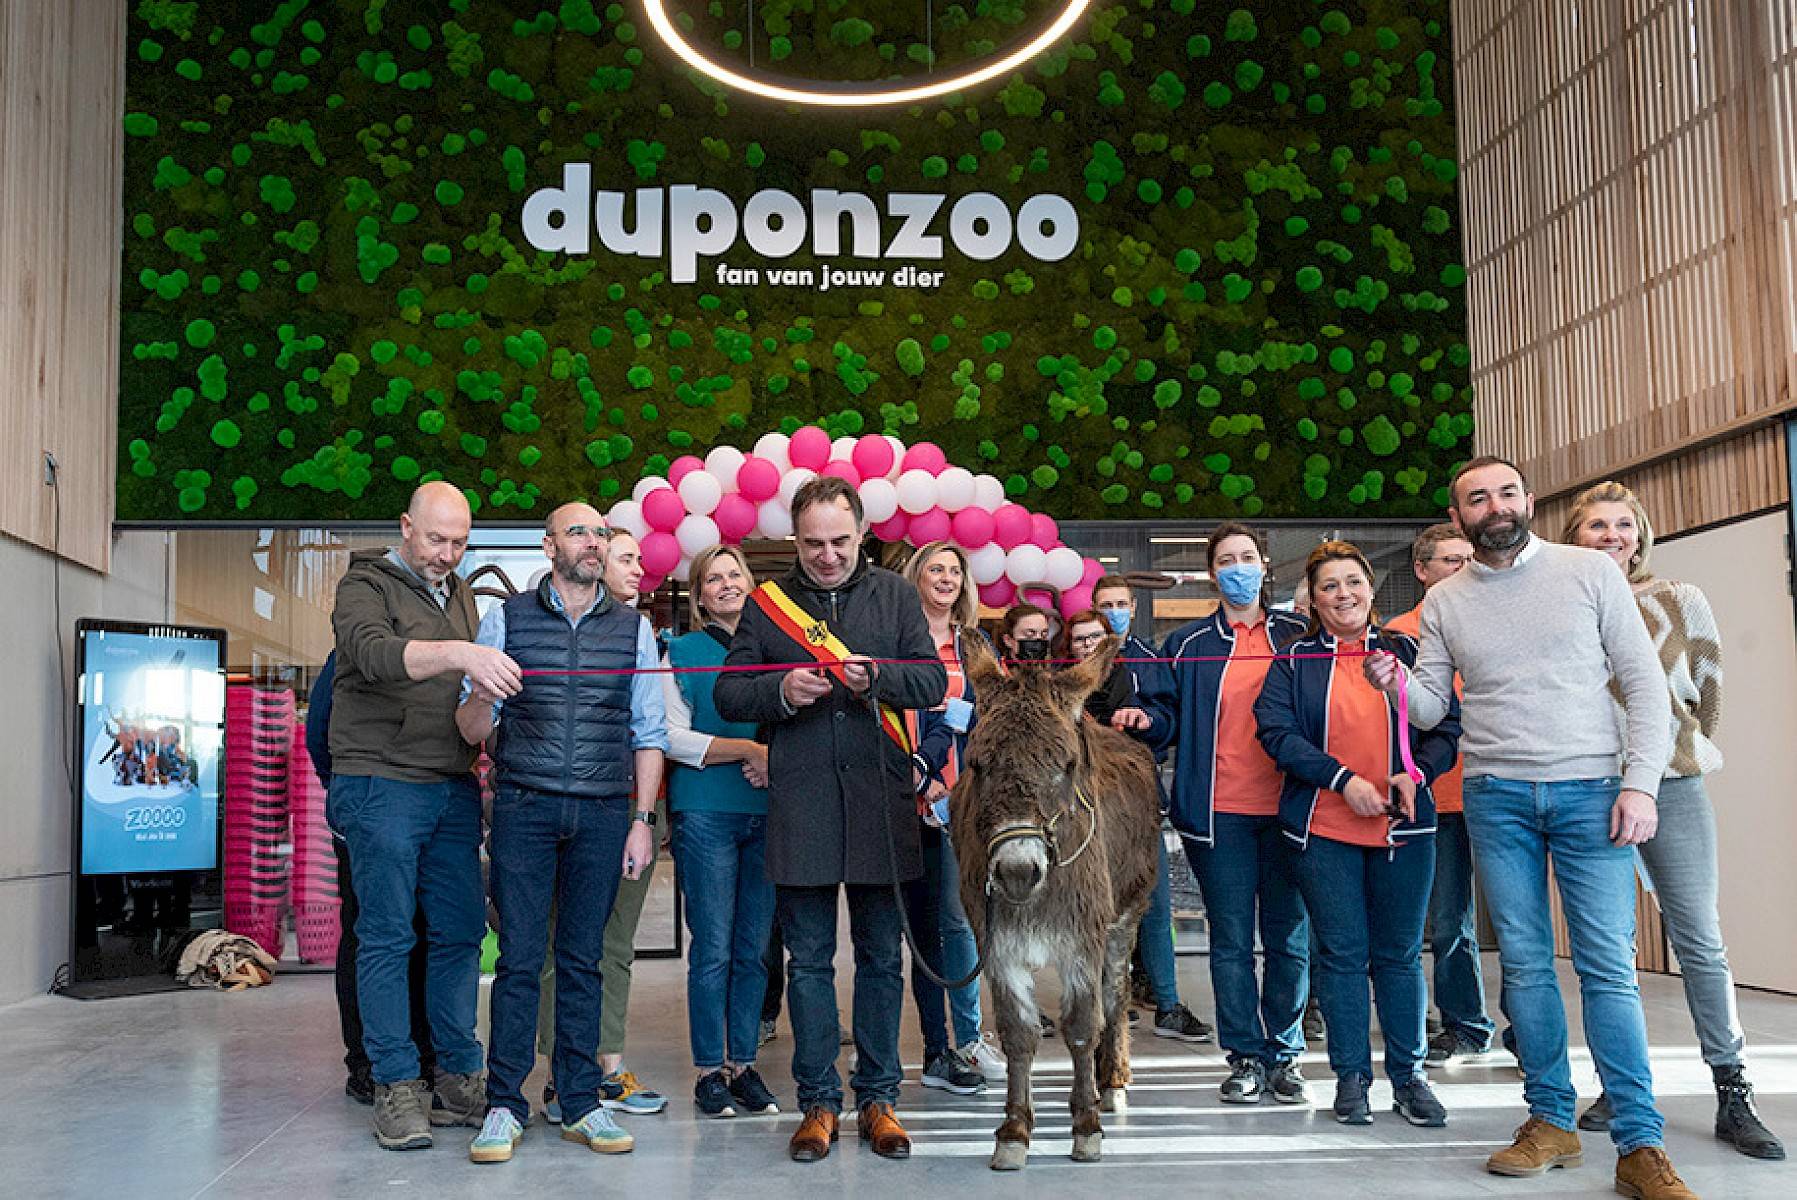 Medewerkers van Duponzoo poseren samen met een ezel, terwijl iemand een feestelijk lint doorknipt voor de ingang van Duponzoo